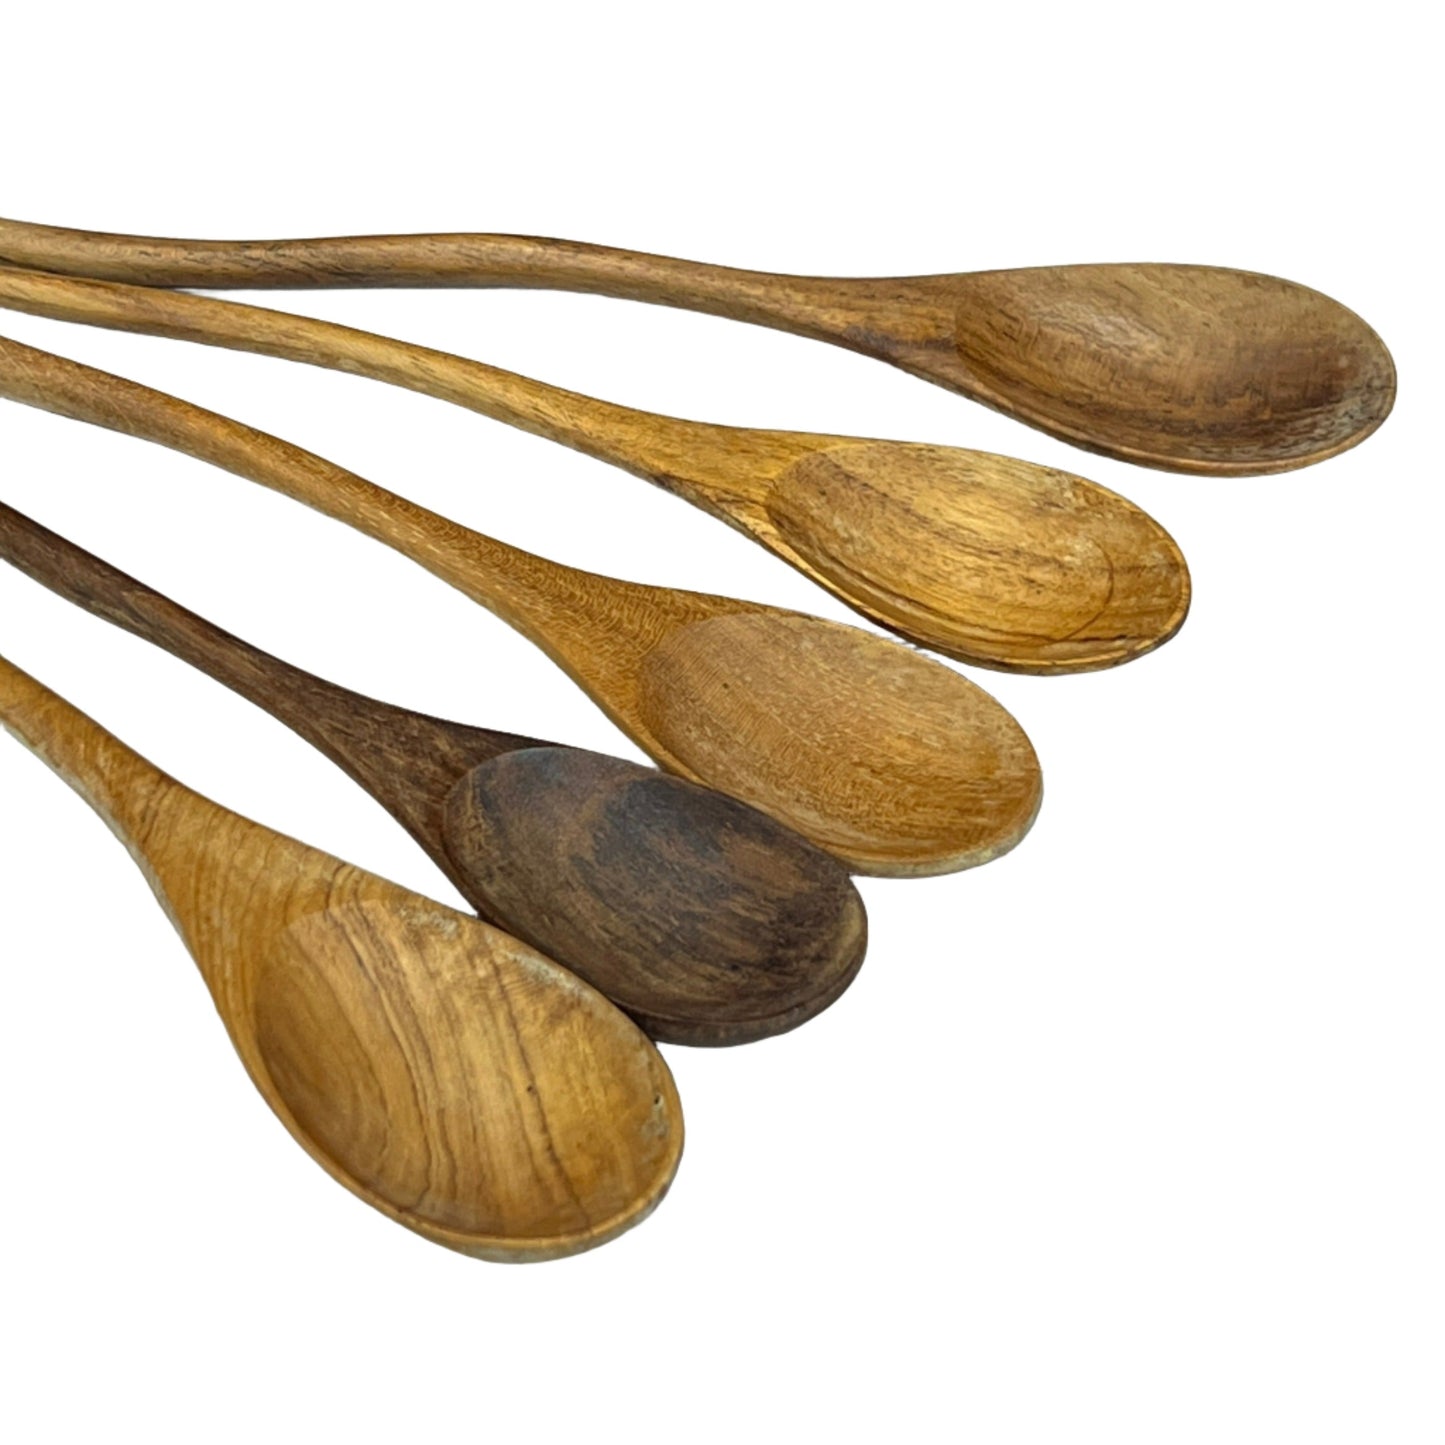 Teak Wood Serving Spoon